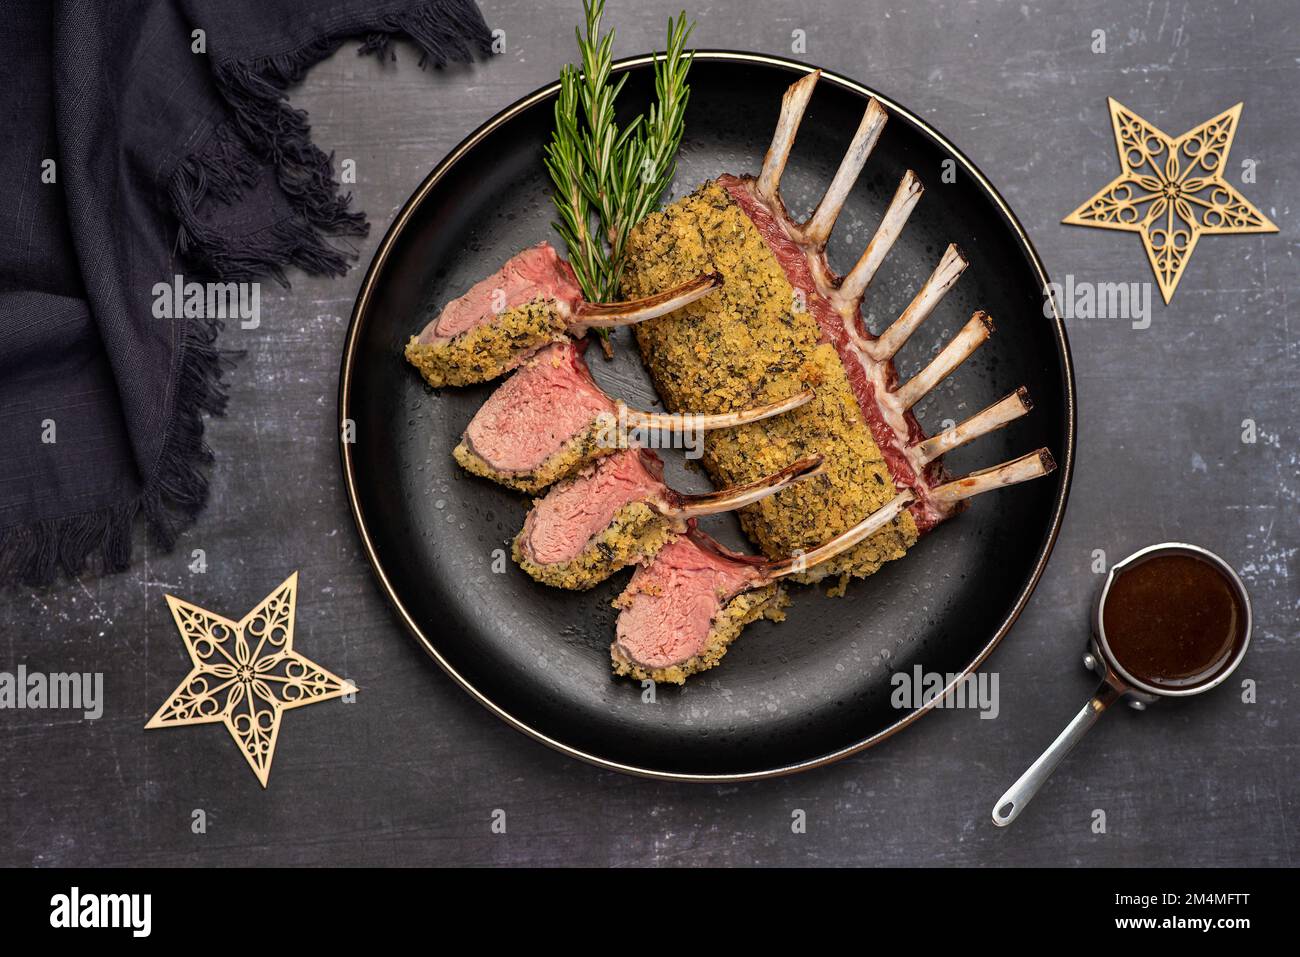 Fotografia alimentare di agnello arrosto, carne, salsa, macelleria, guarnitura Foto Stock